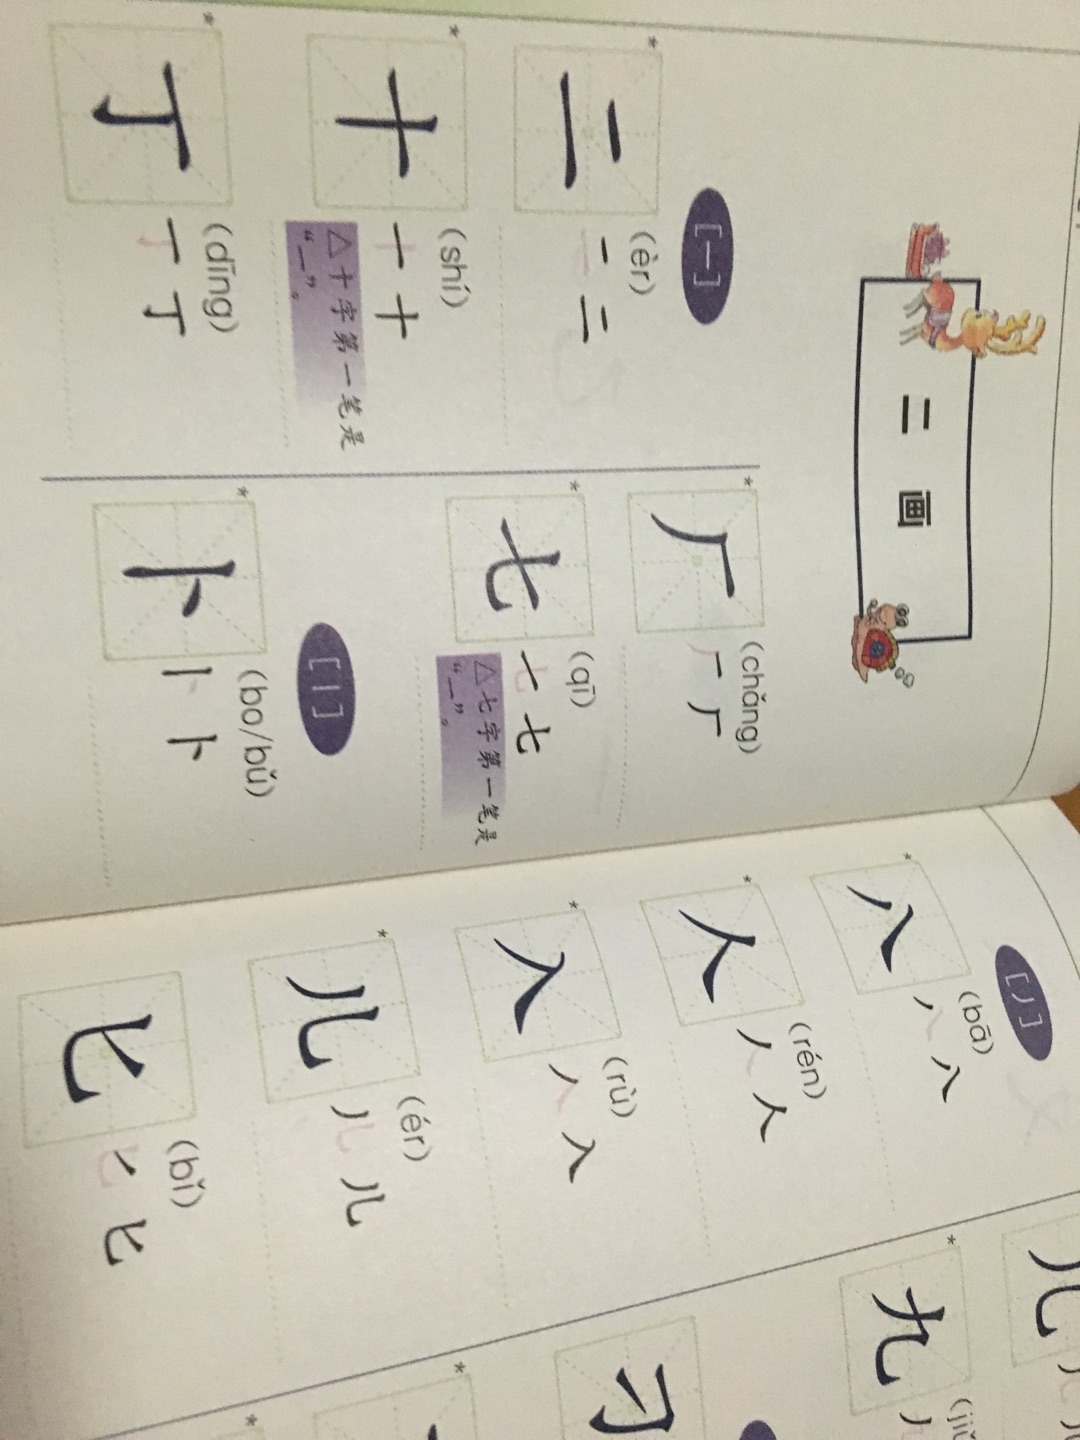 幼小阶段都非常适合的工具书，特别写字初期，可以用来纠正汉字笔画，规范汉字笔顺。个人觉得美中不足的是没有拼音，所以对于幼小的孩子来说独立使用还是有难度的。